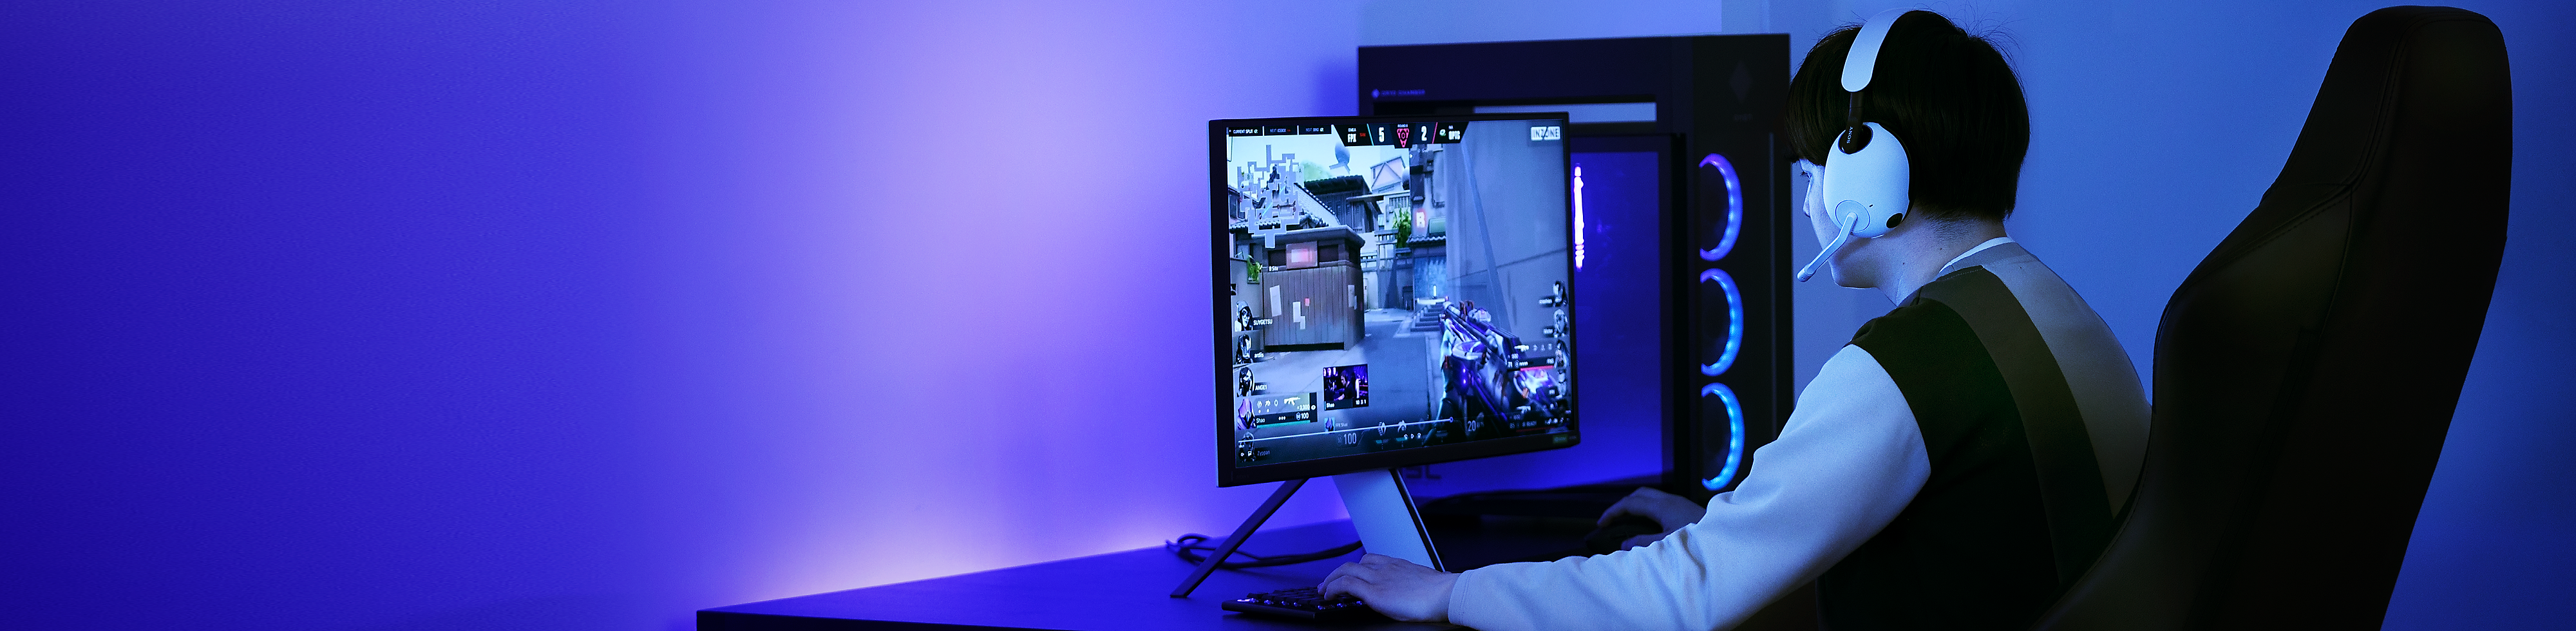 Imagen de un hombre en una habitación con iluminación morada jugando a VALORANT en una PC con unos audífonos con micrófono para juegos INZONE H9